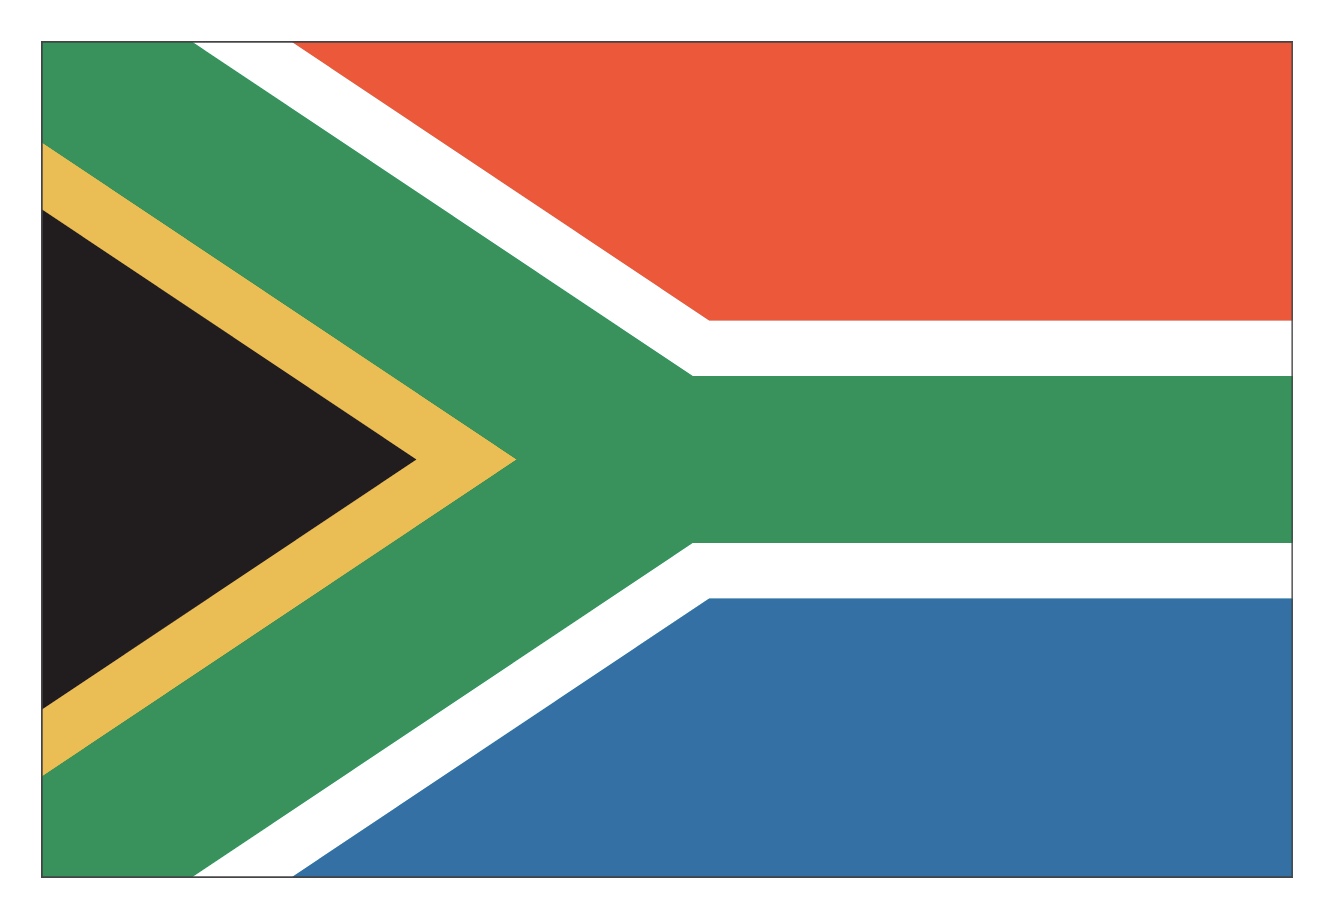 Bandeira da África do Sul, composta por um triângulo preto à esquerda, com faixas diagonais verdes ao lado dele, que se unem ao centro. A parte acima dessa faixa é vermelha e a parte abaixo dela, é azul. Há uma linha fina amarela contornando dois lados do triângulo e linhas brancas contornando a faixa verde acima e abaixo.